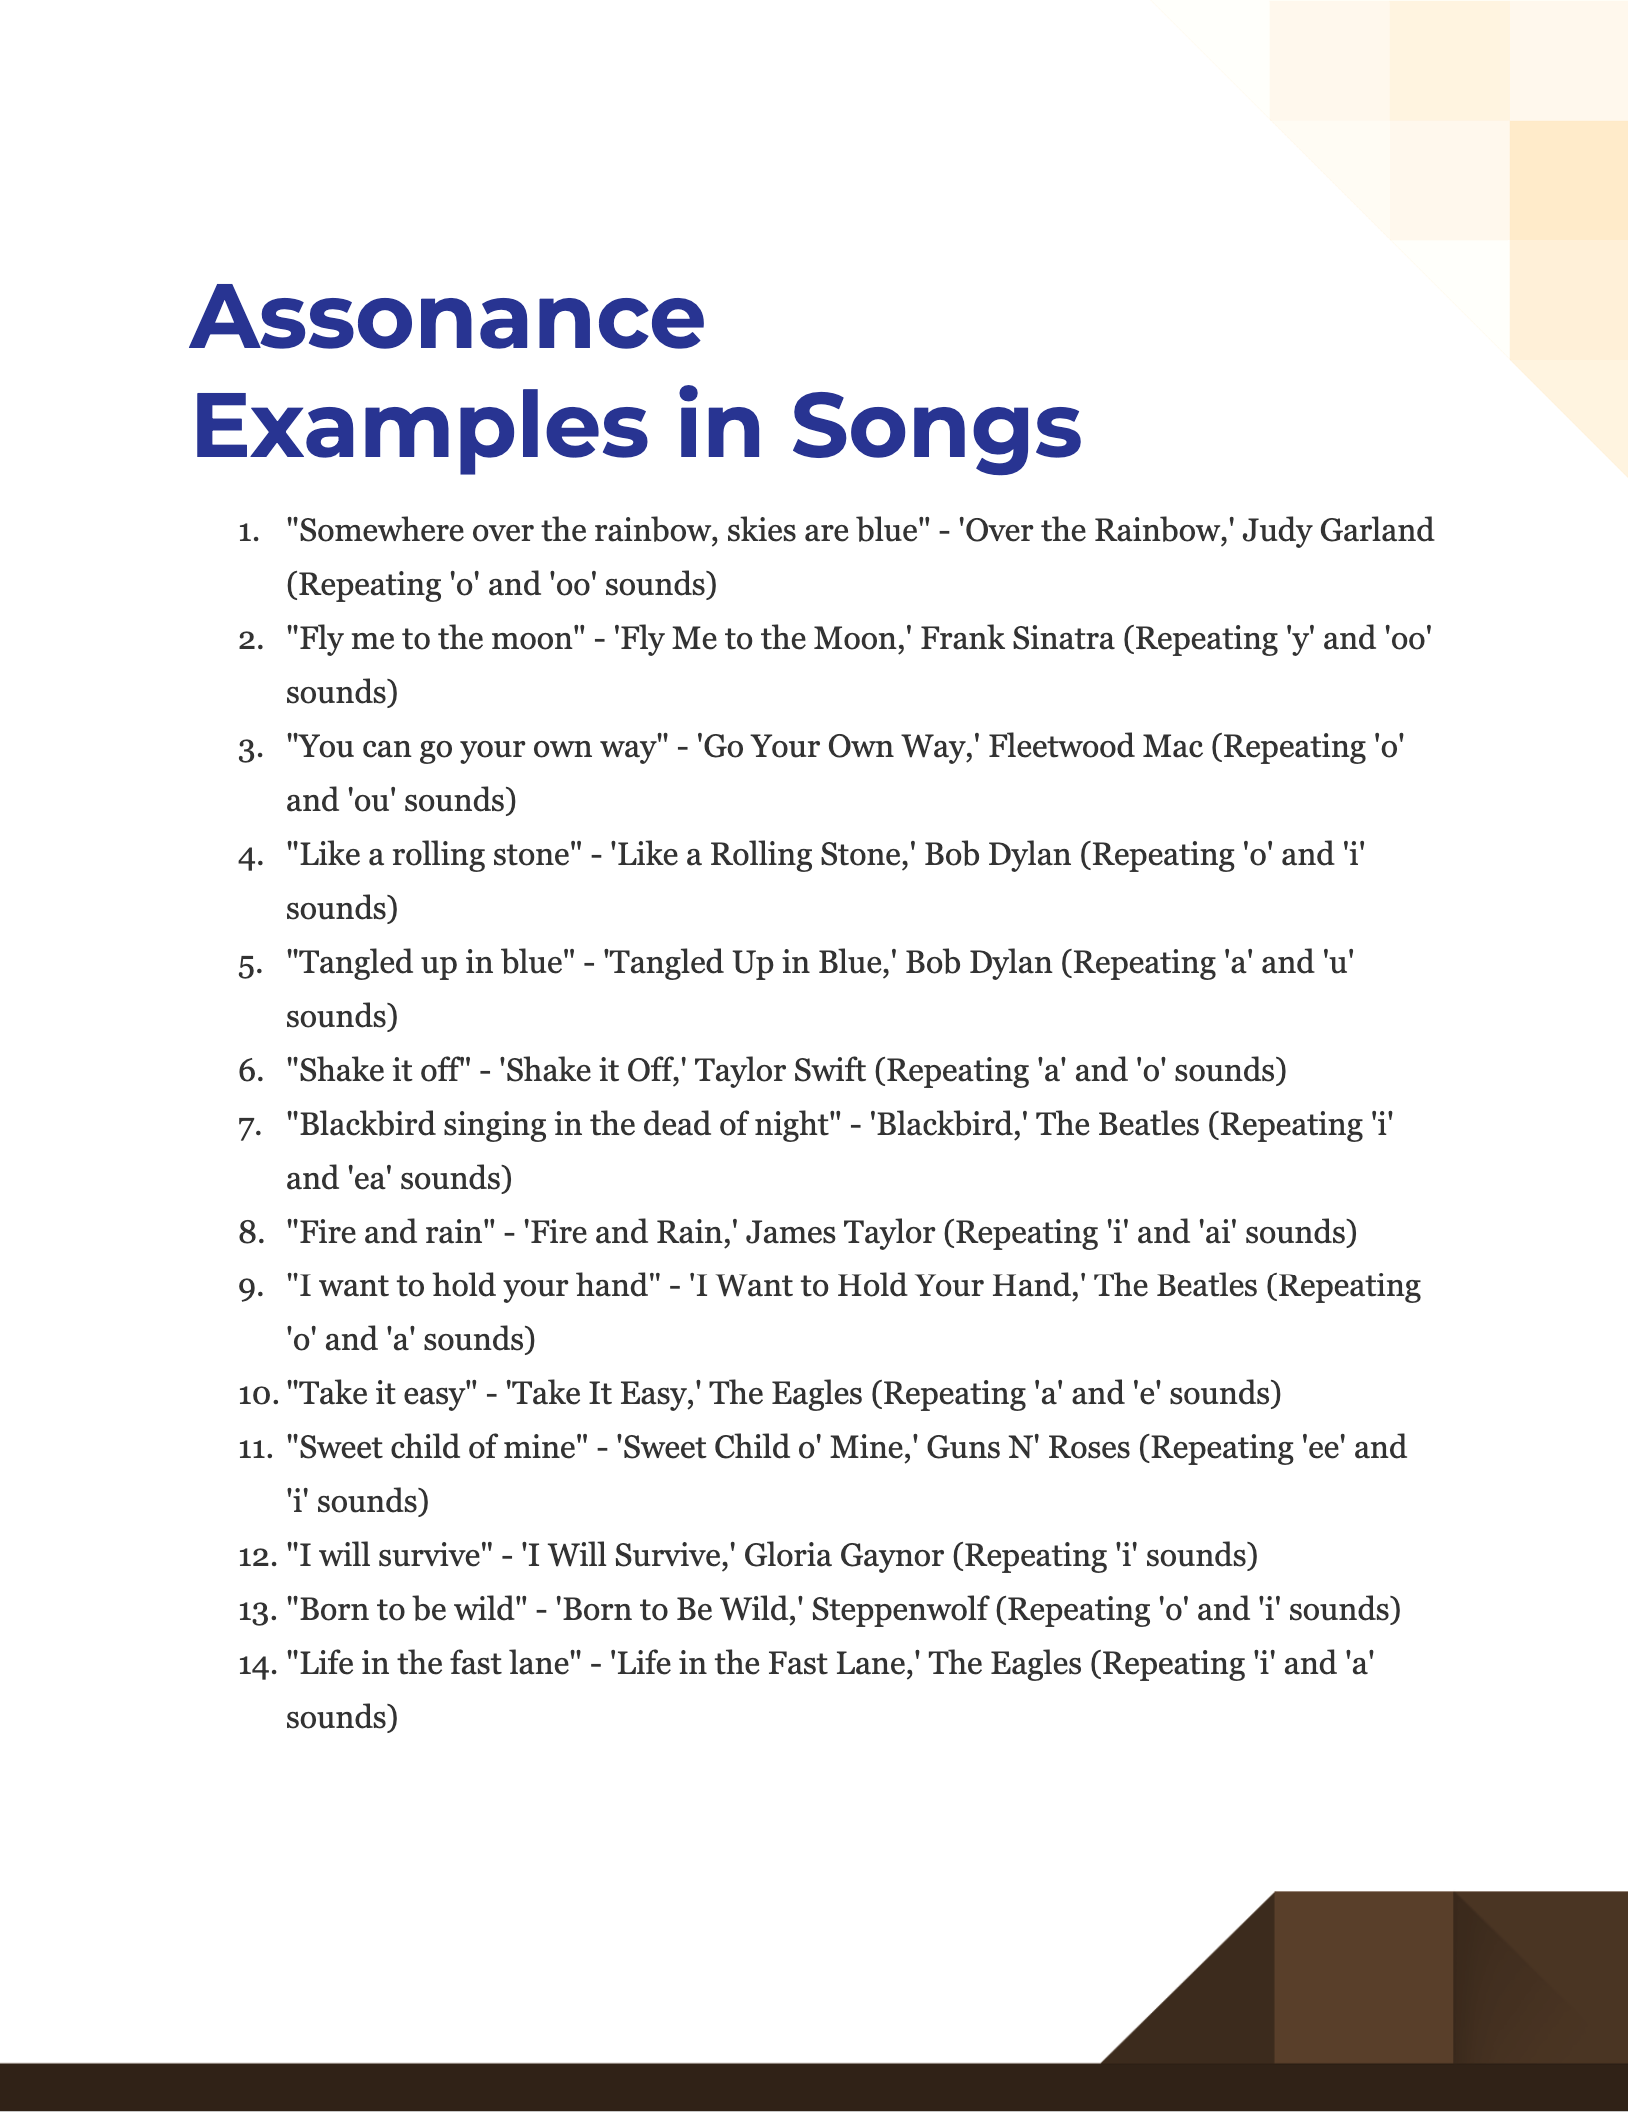 Assonance in Songs